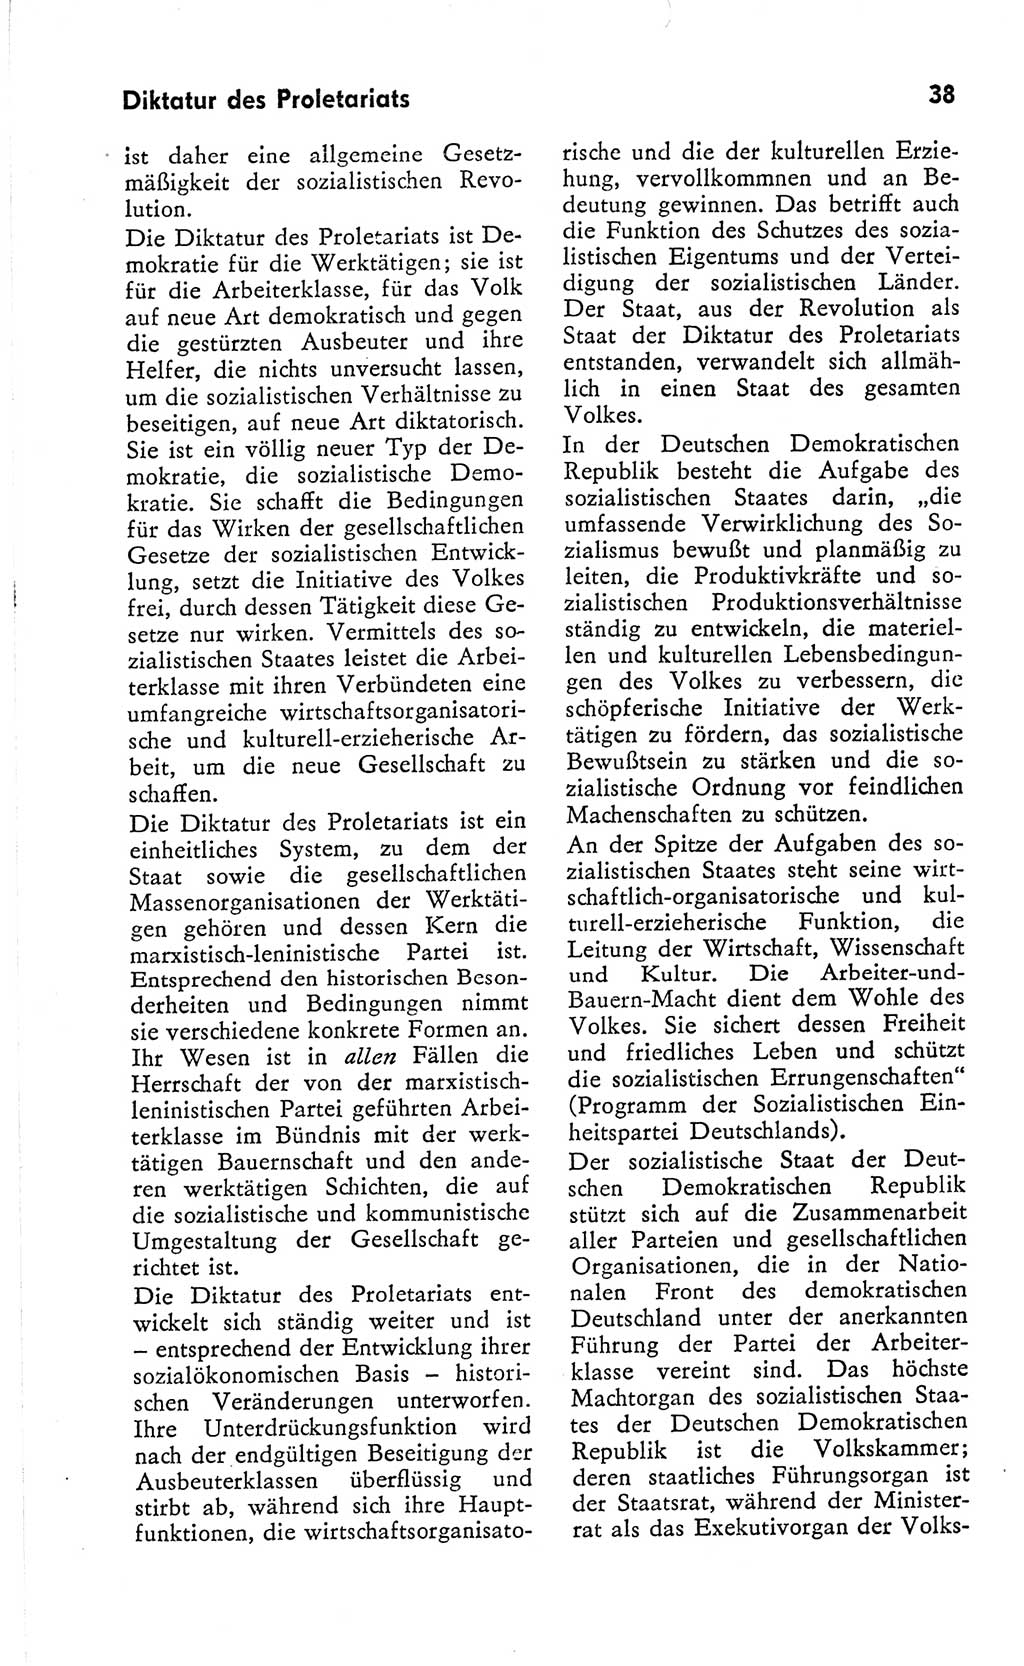 Kleines Wörterbuch der marxistisch-leninistischen Philosophie [Deutsche Demokratische Republik (DDR)] 1966, Seite 38 (Kl. Wb. ML Phil. DDR 1966, S. 38)